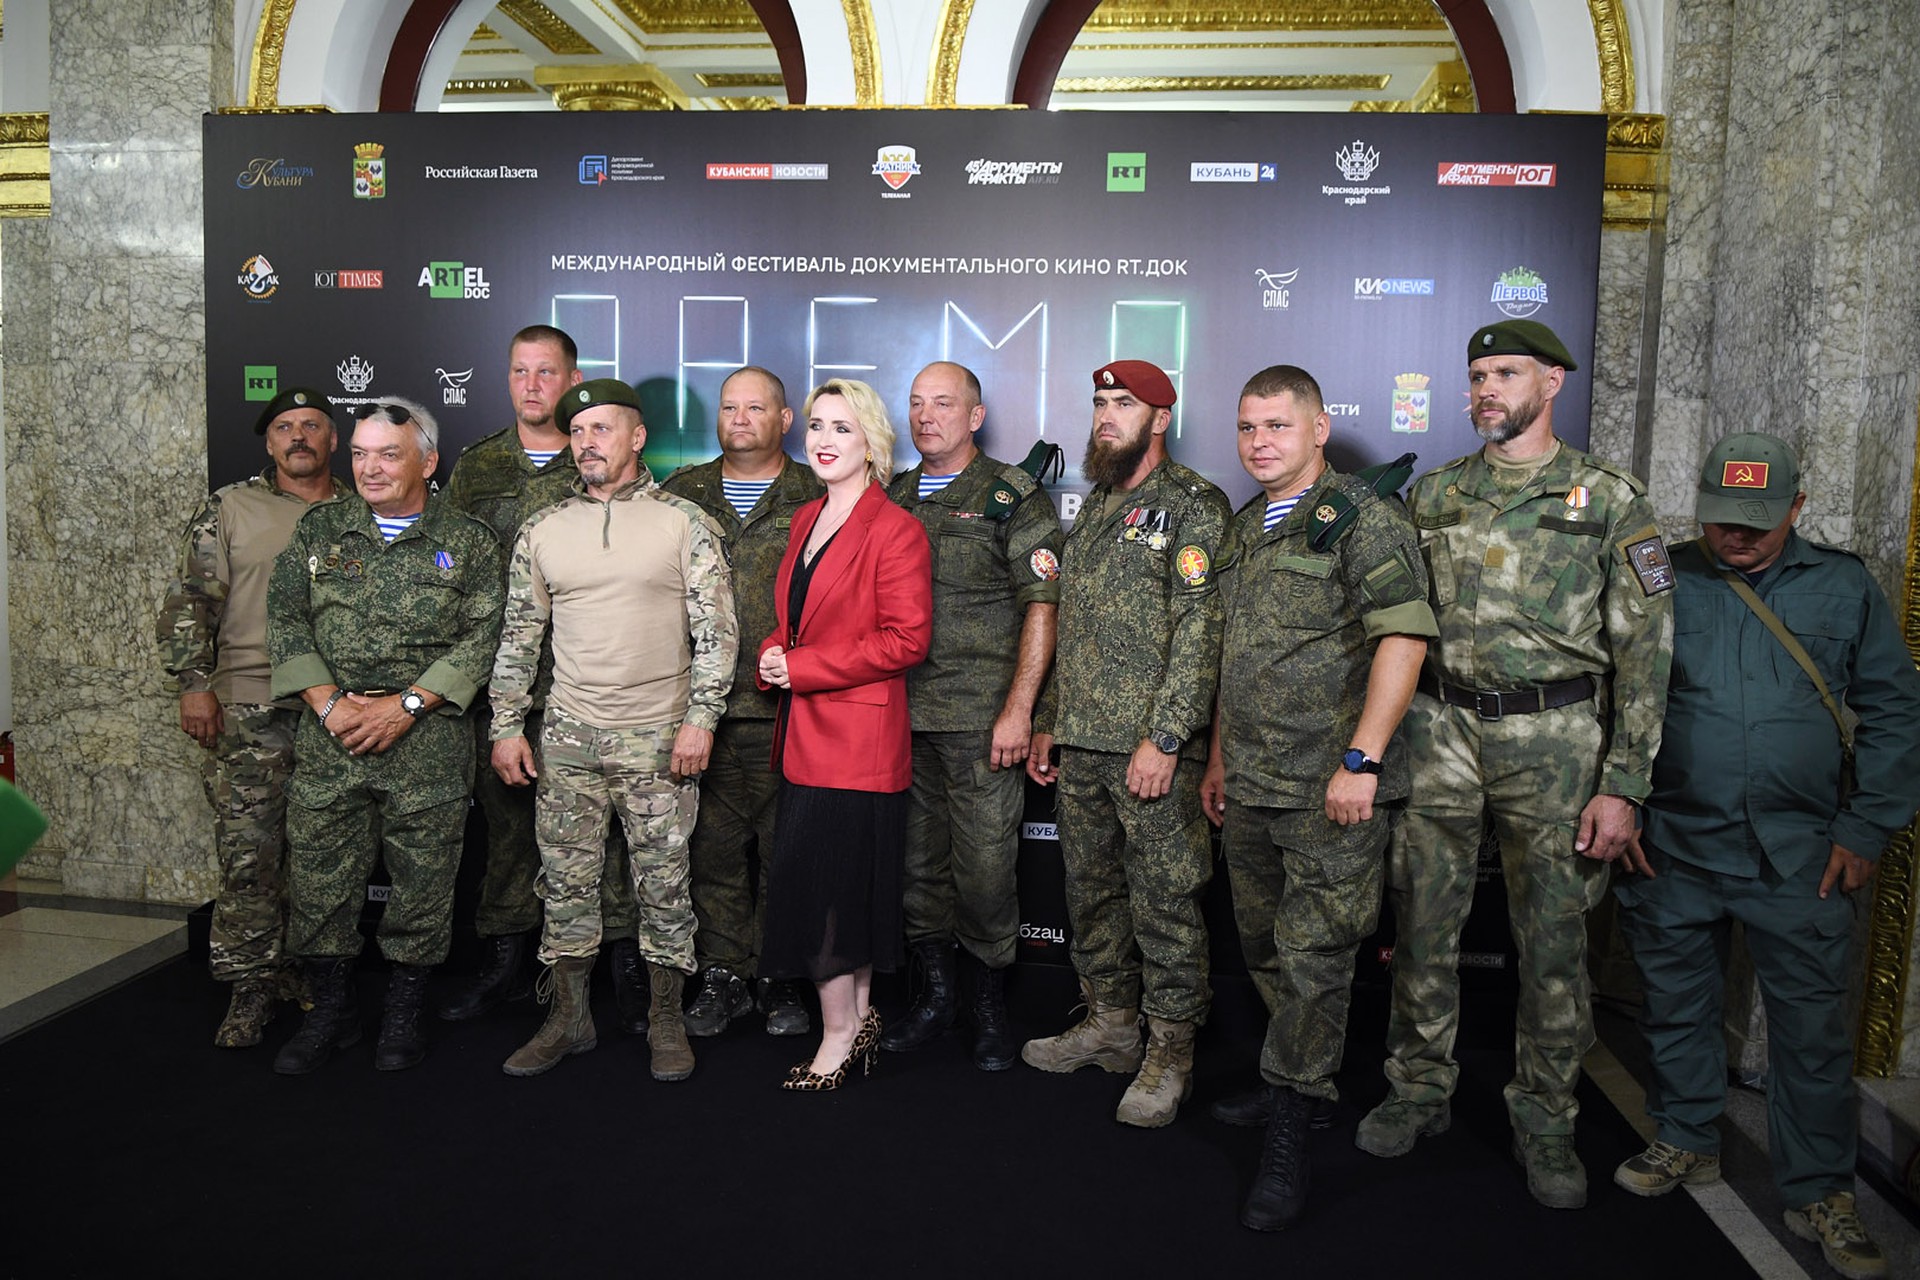 В Краснодаре открылся международный фестиваль документального кино